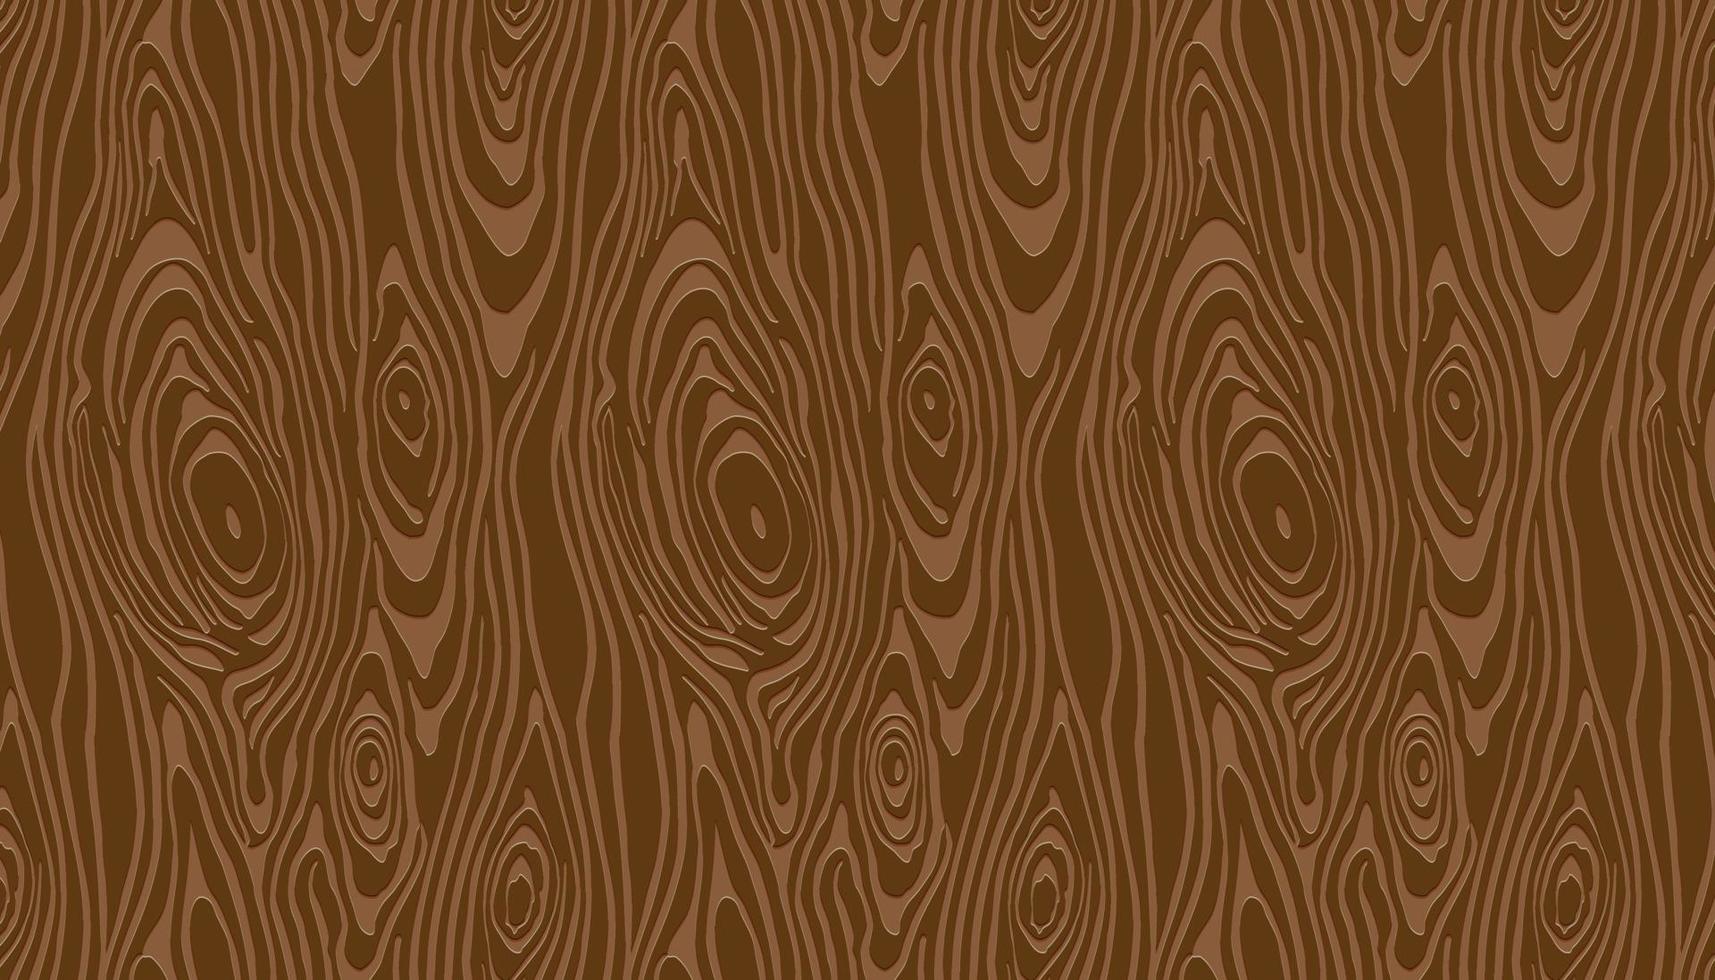 Wood grain texture. vector